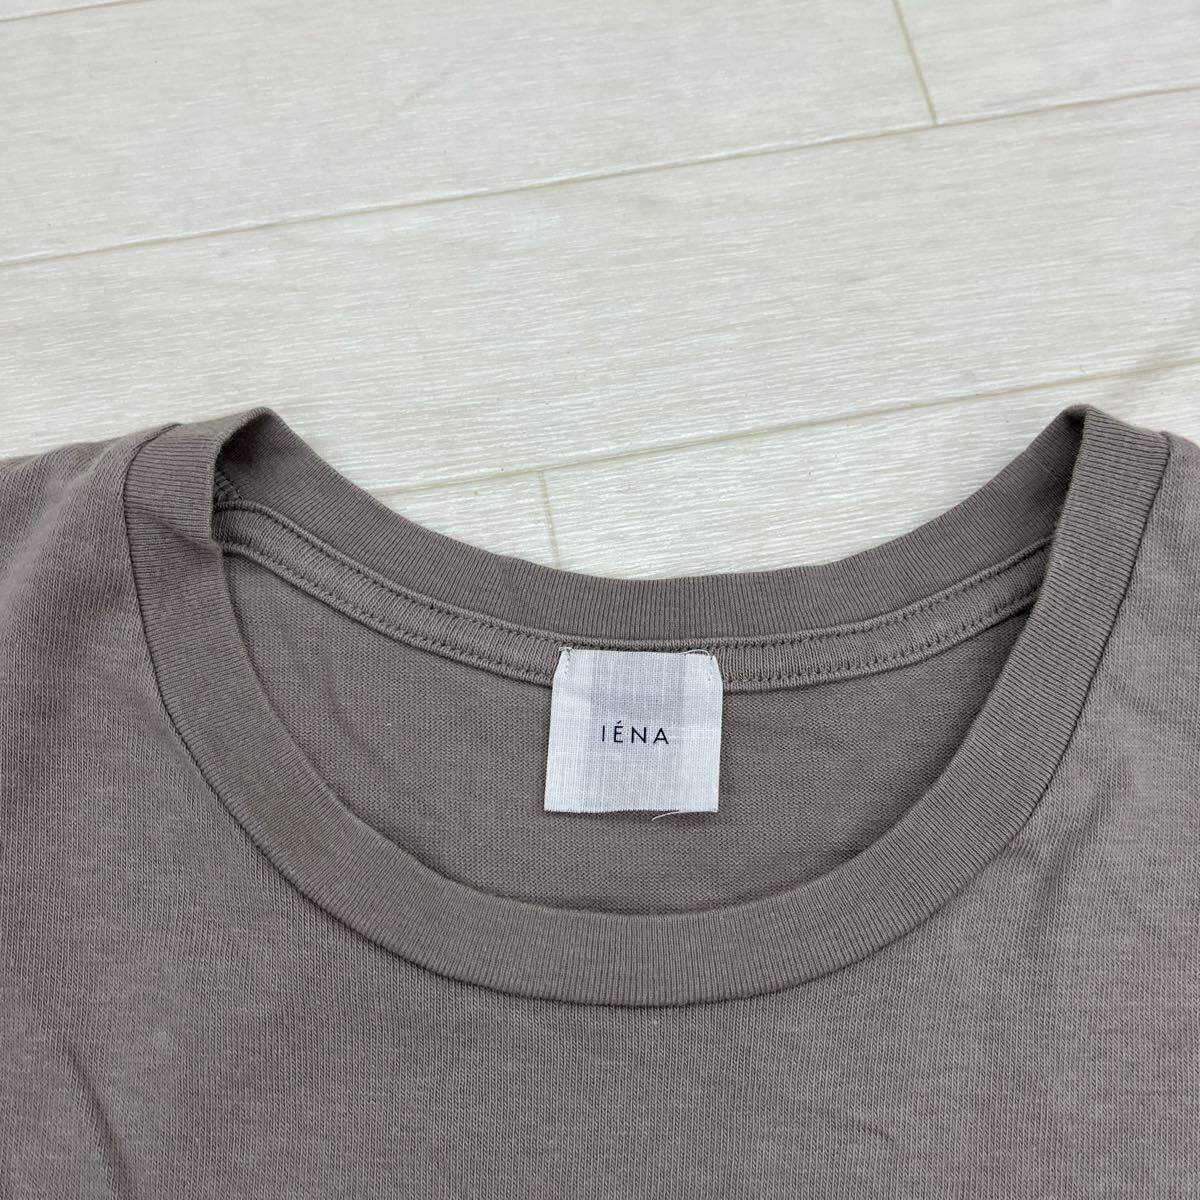 1438◎ 日本製 IENA イエナ トップス カットソー Tシャツ 半袖 クルーネック 文字 プリント カジュアル ベージュ レディース_画像3